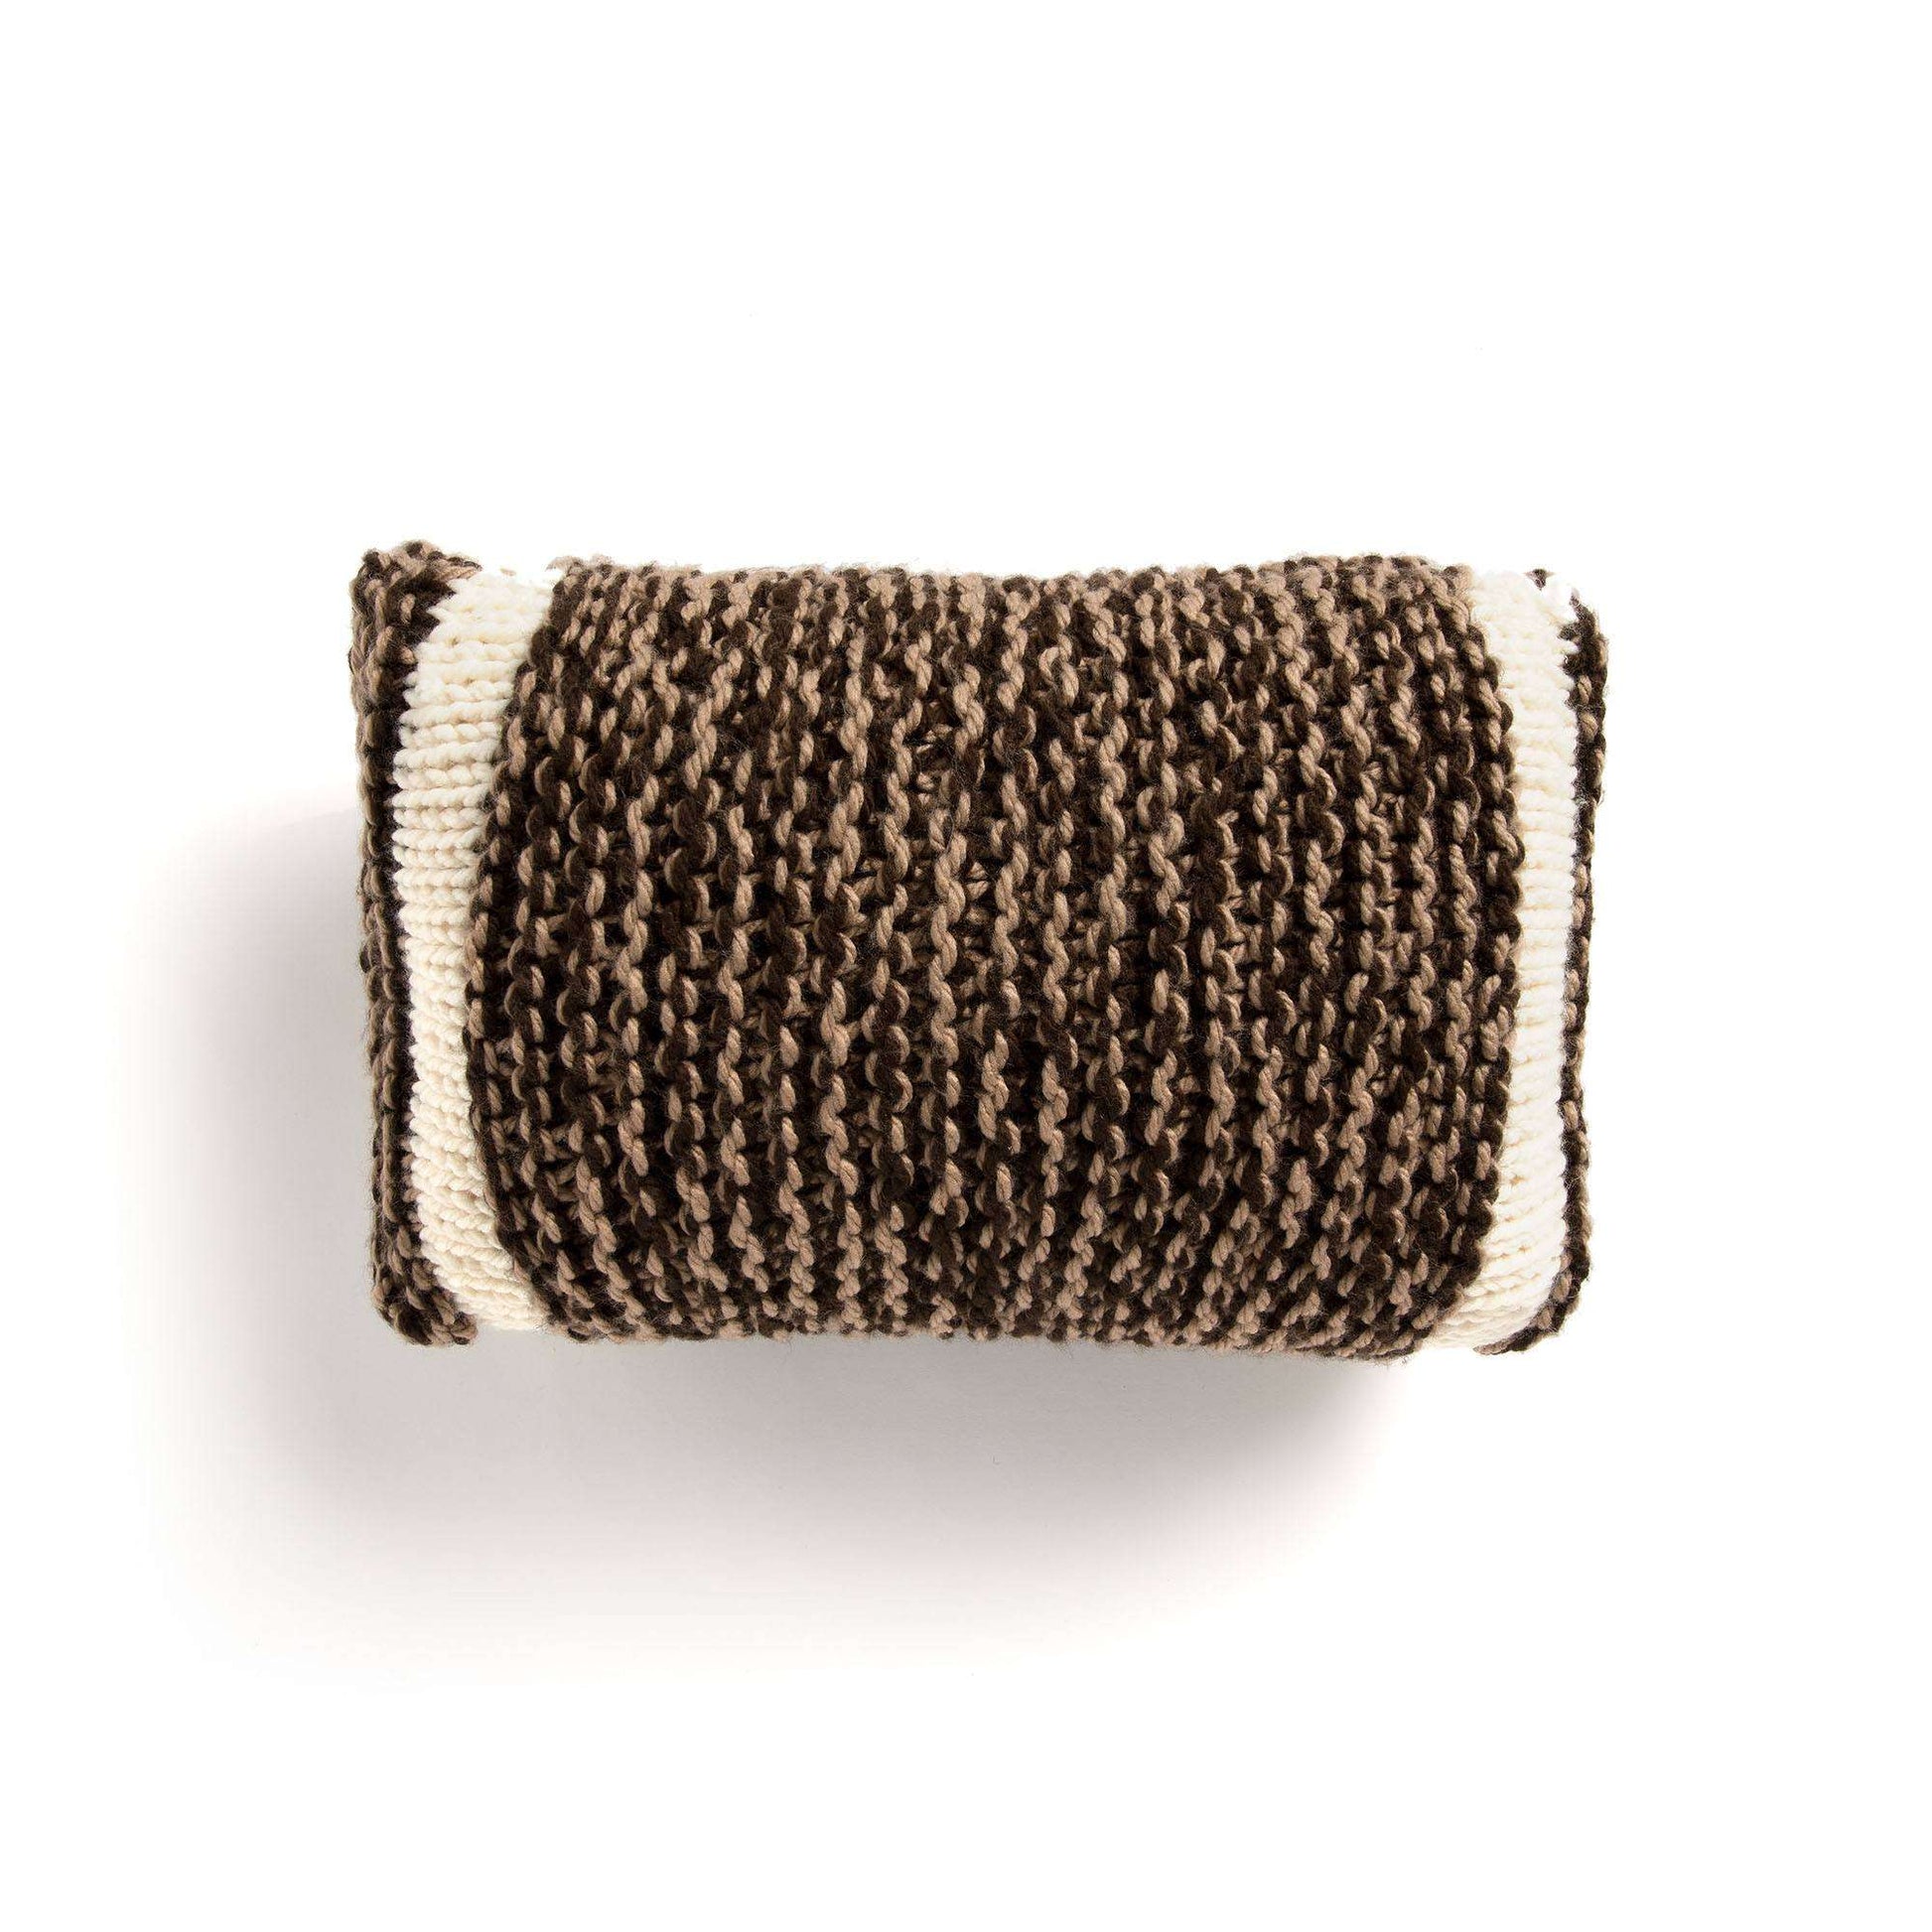 Bernat Touchdown Knit Pillow Single Size